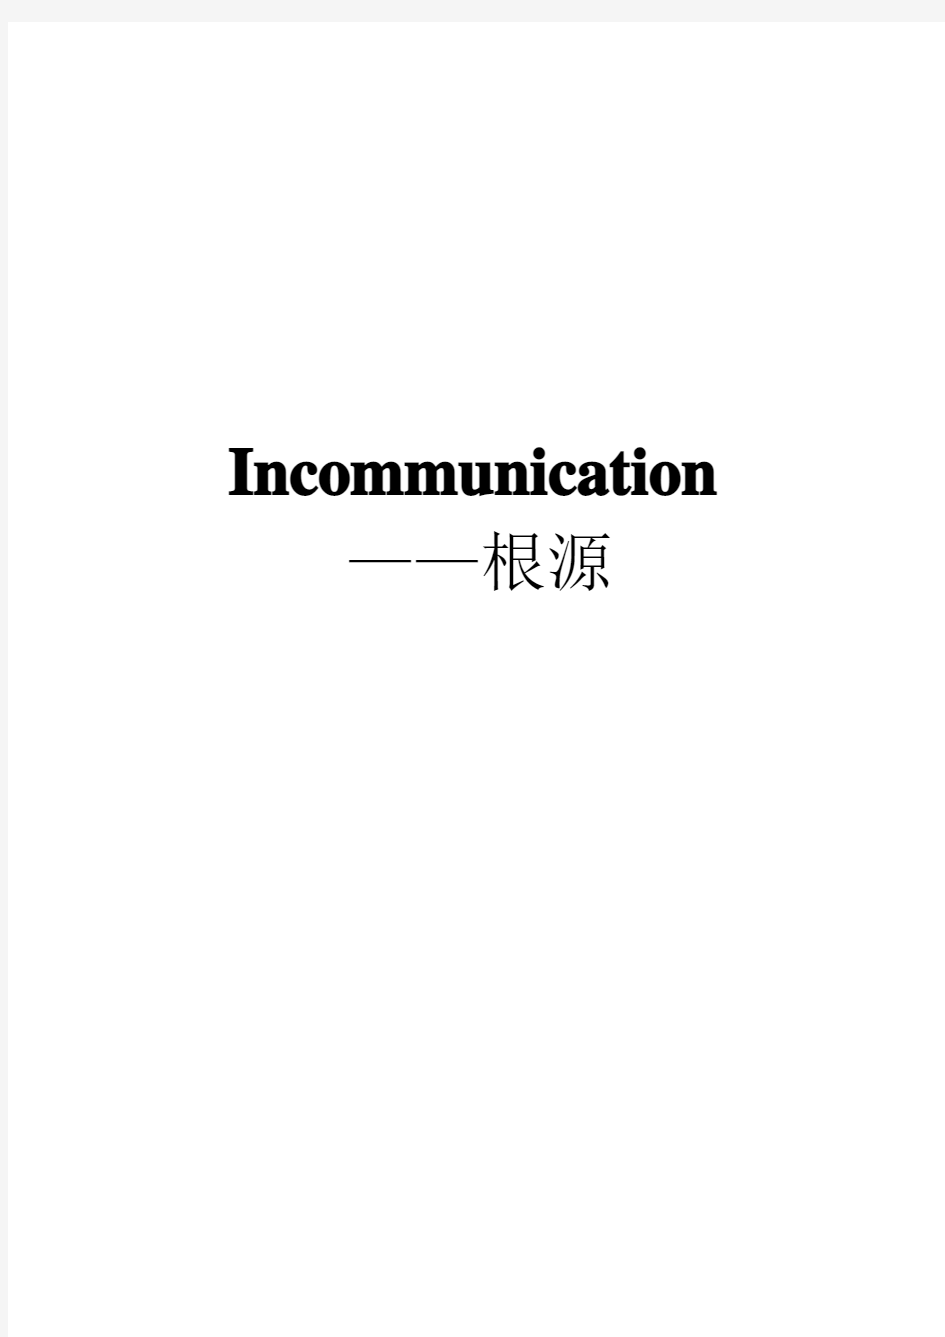 Incommunication